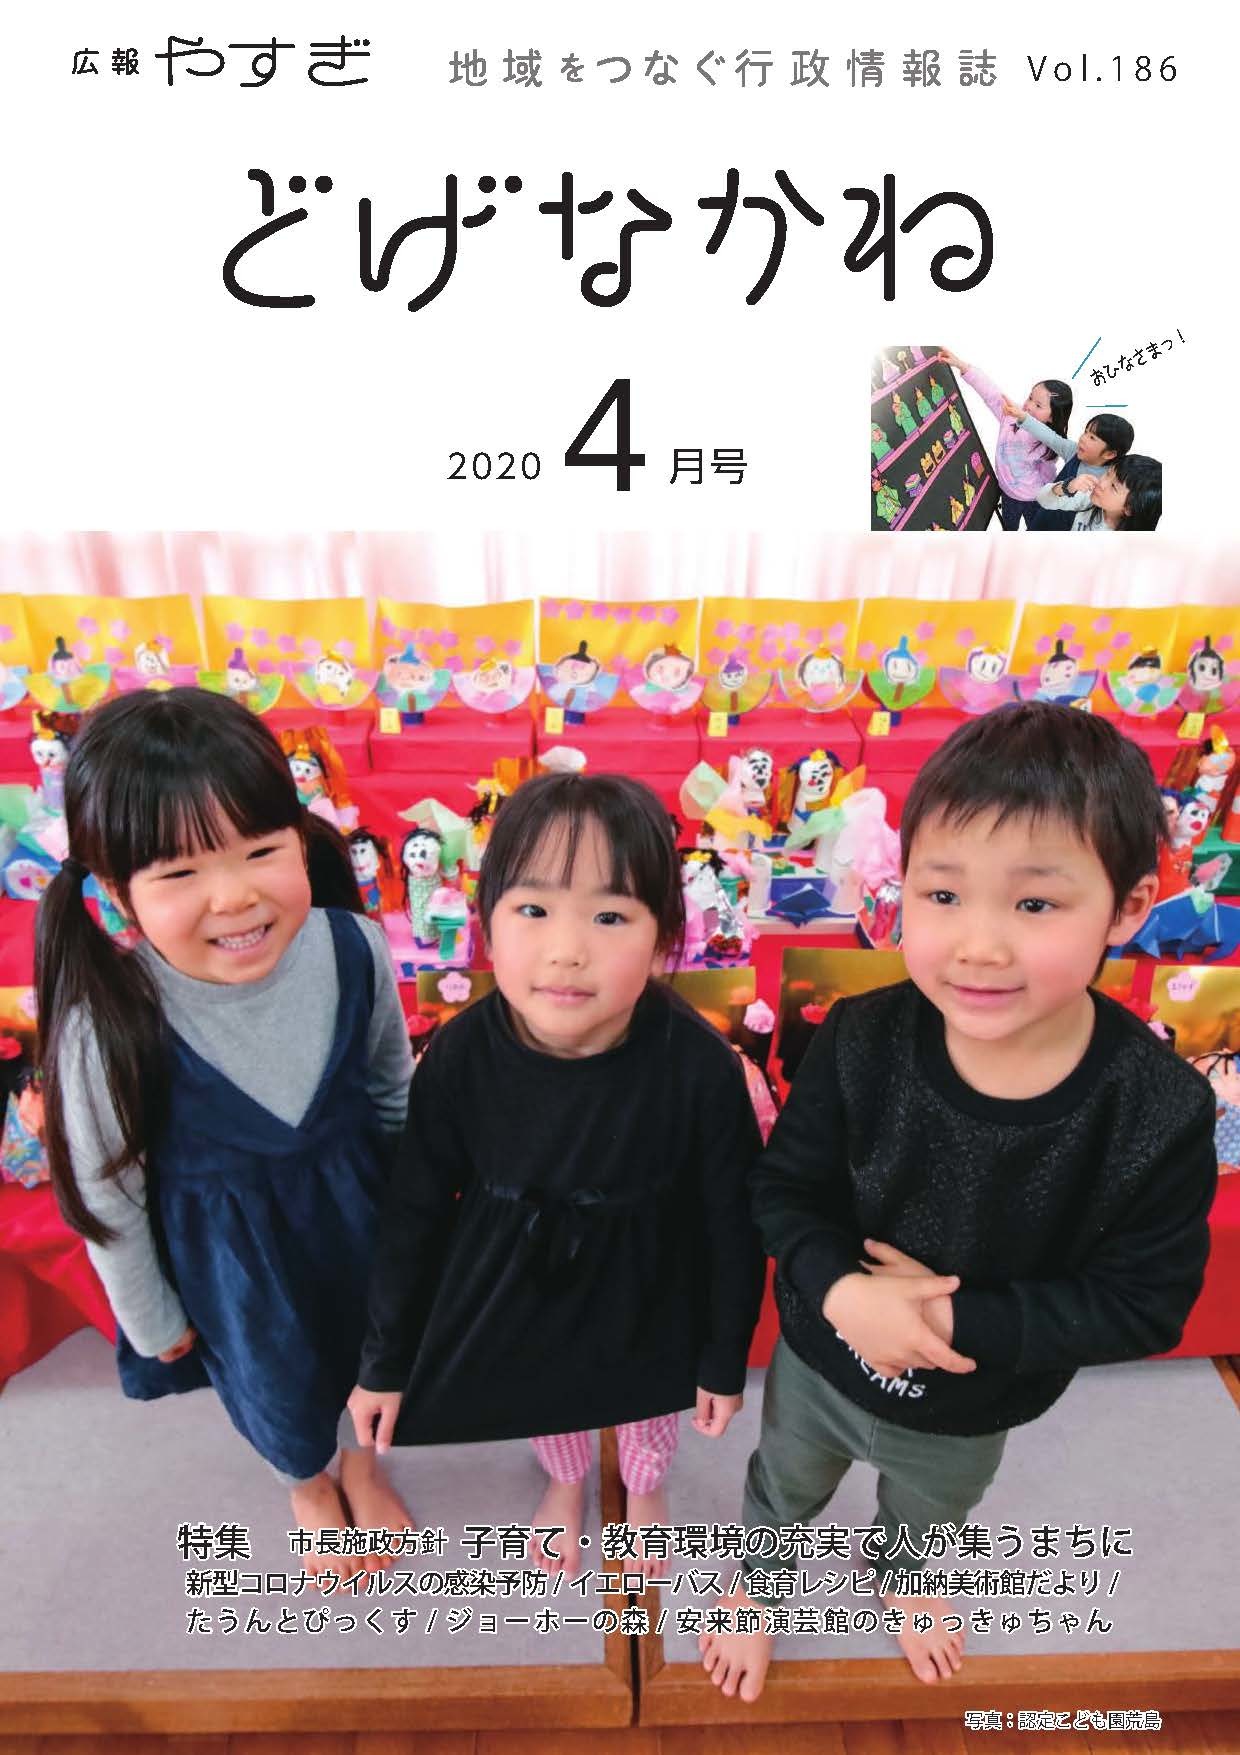 「どげなかね」令和2年4月号表紙「誕生日をひな人形がお祝い」